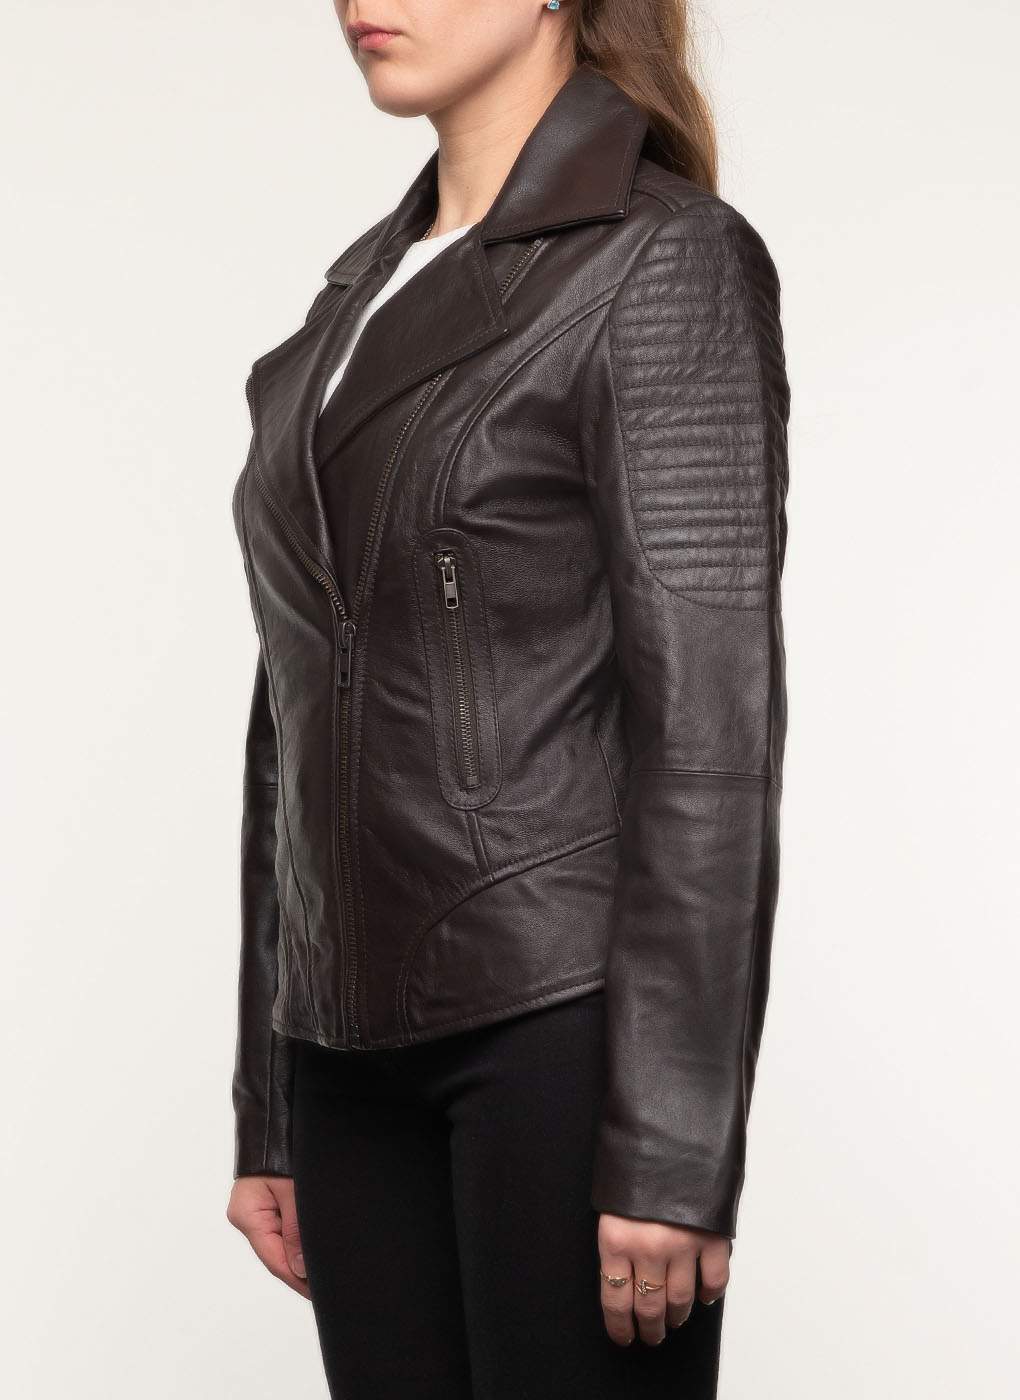 Кожаная куртка женская Каляев 41319 коричневая 50 RU